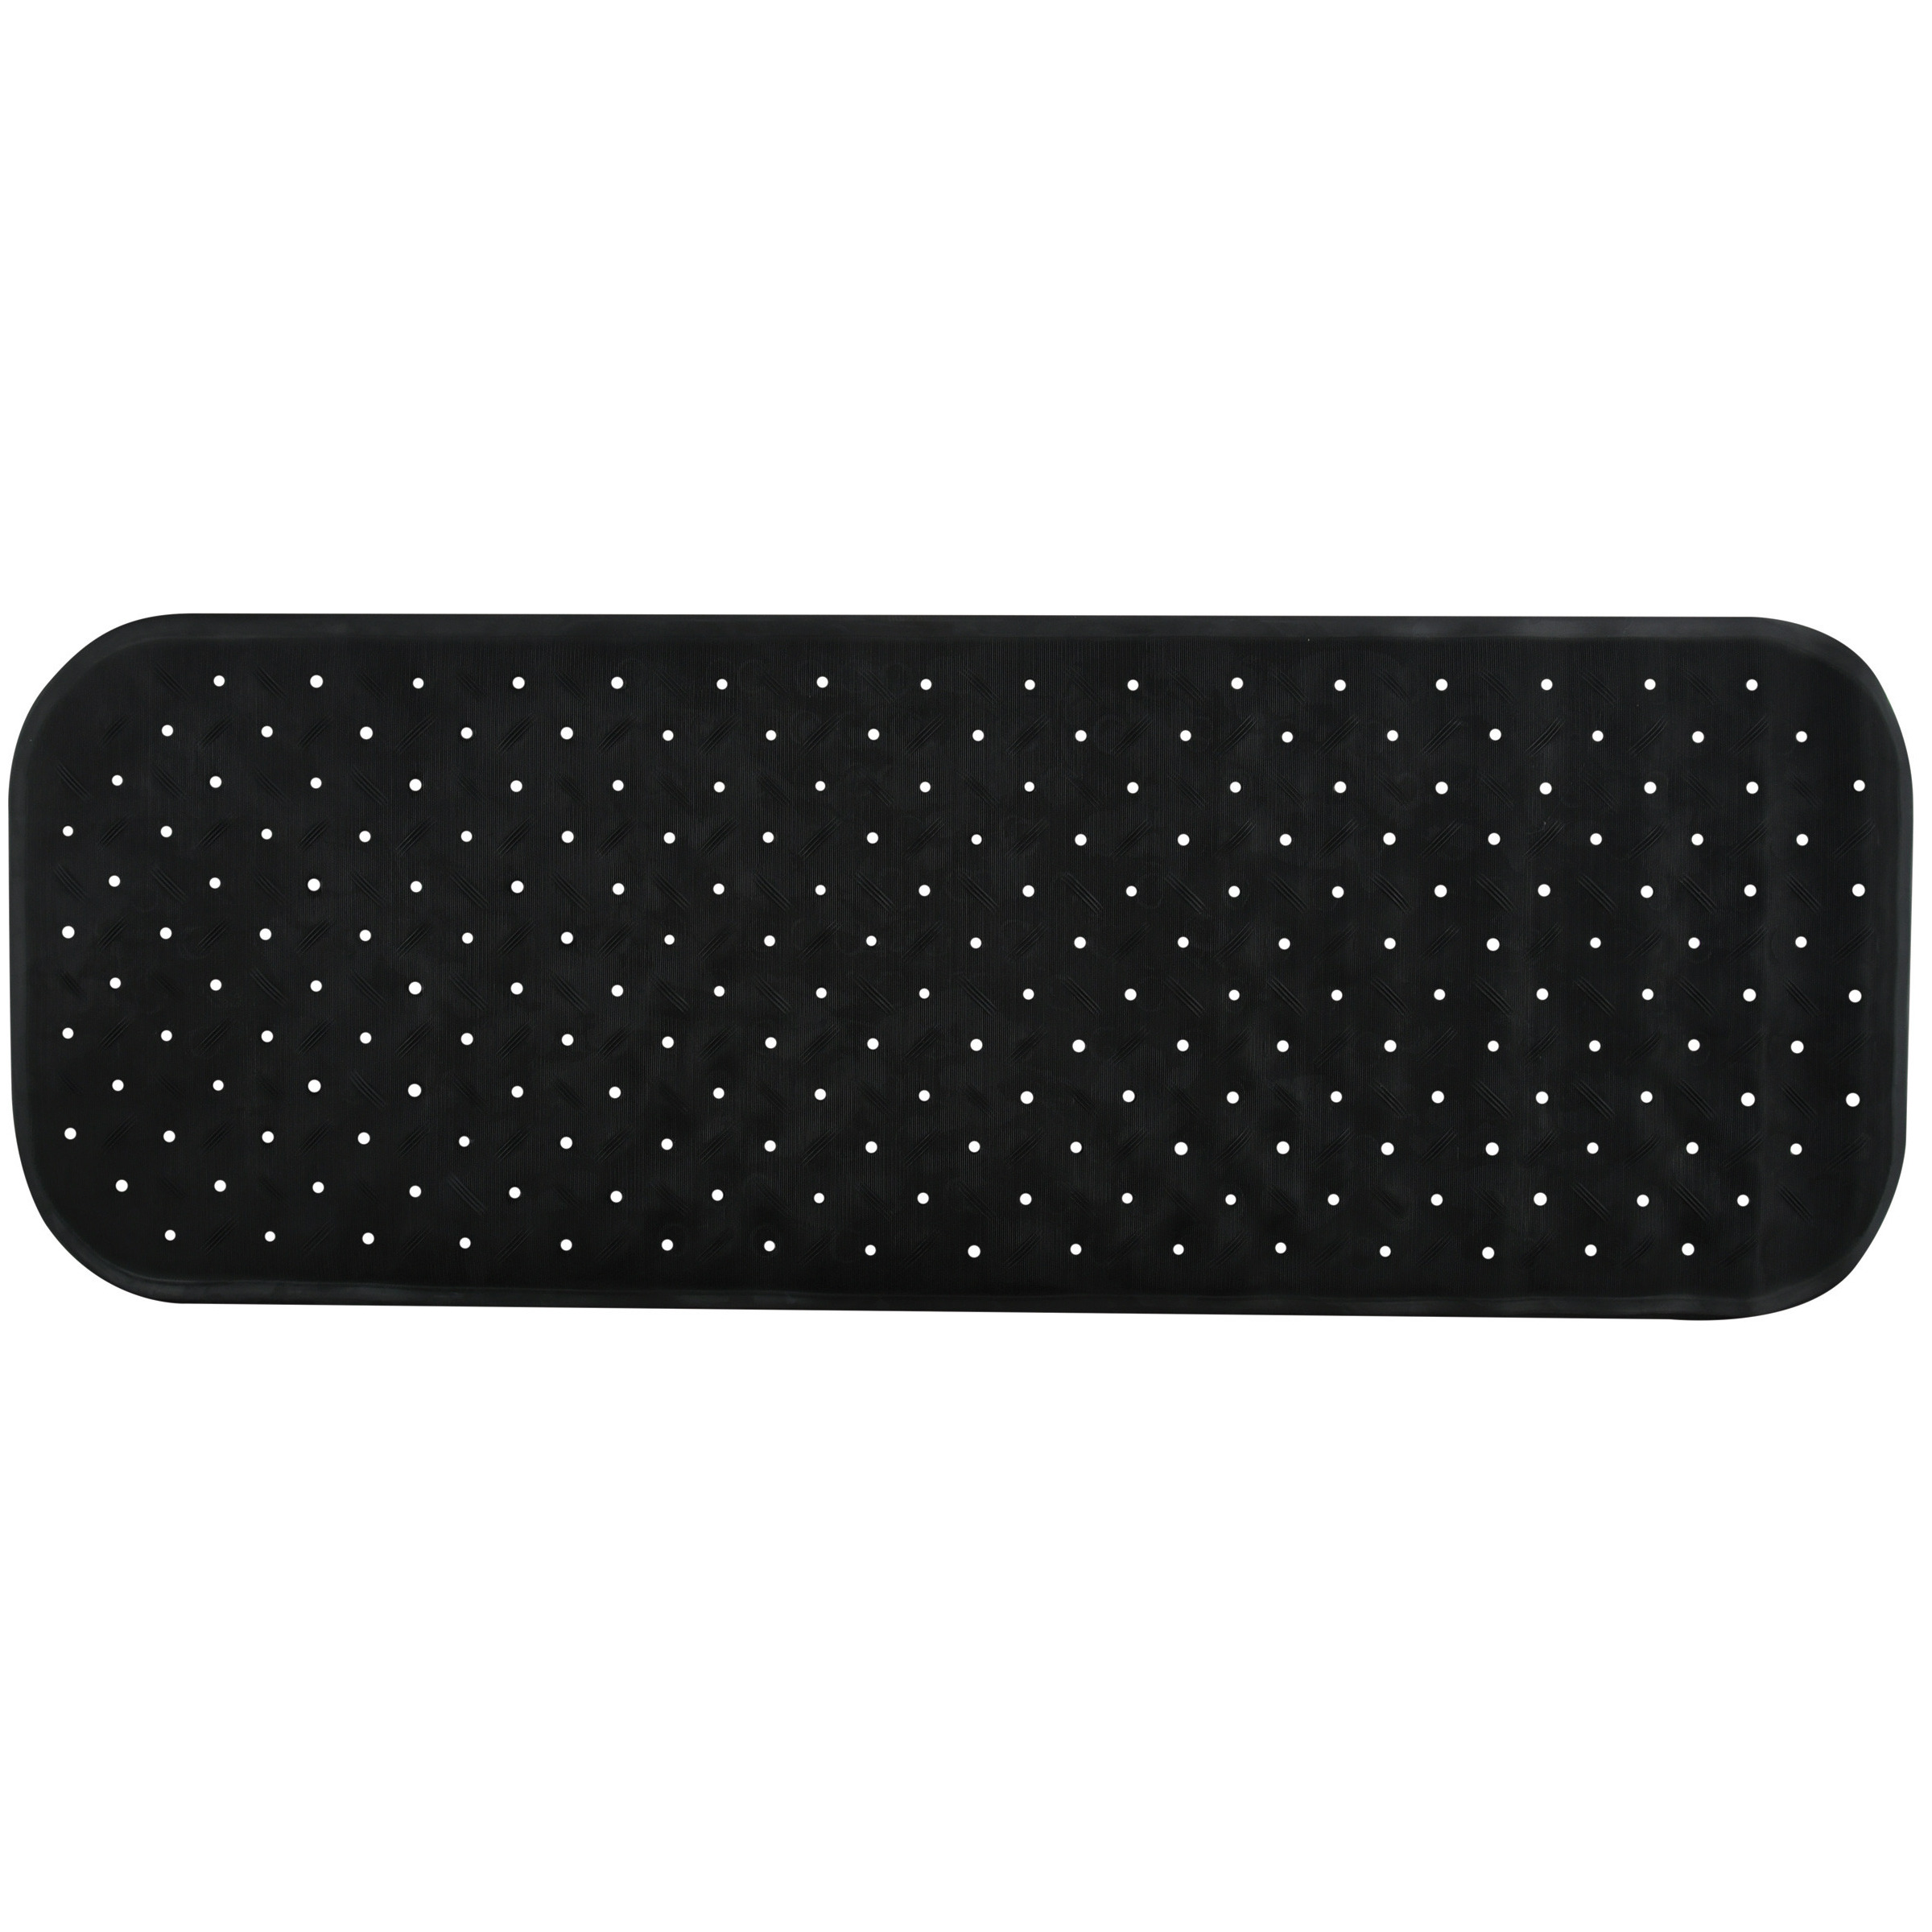 Douche-bad anti-slip mat badkamer rubber zwart 36 x 97 cm rechthoek XXL-size